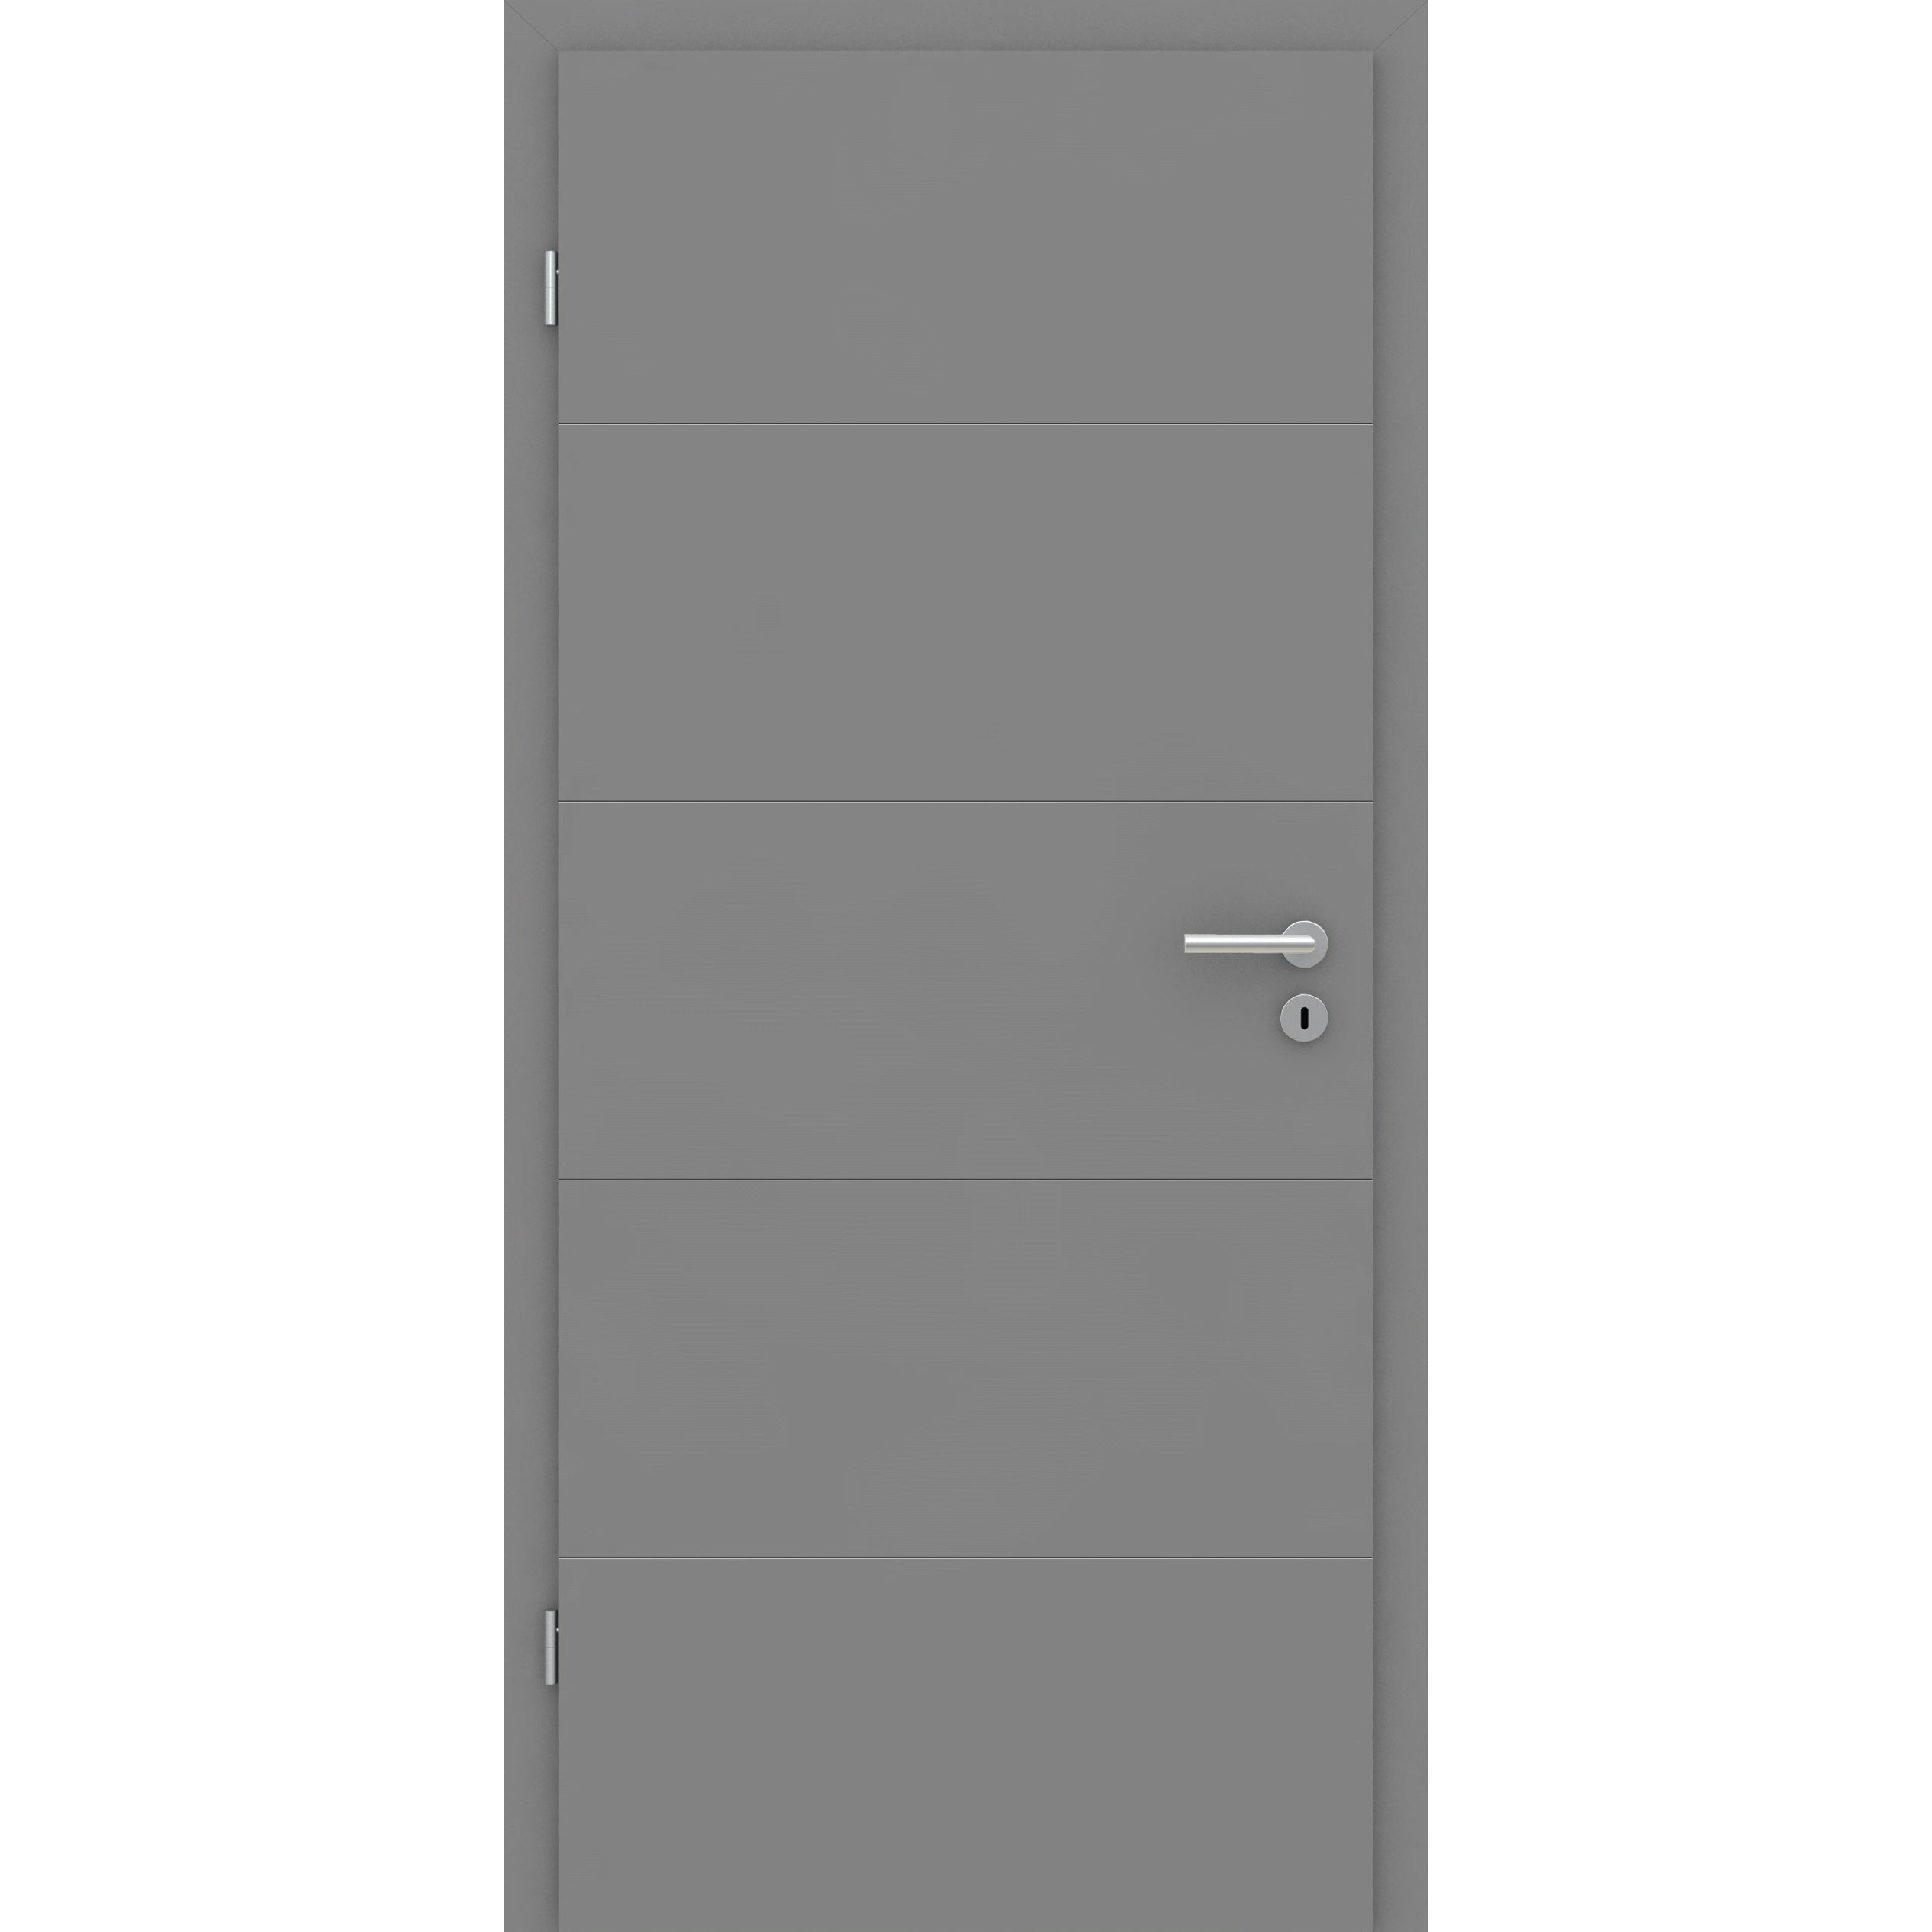 Wohnungseingangstür mit Zarge grau 4 Rillen quer Designkante SK1 / KK3 - Modell Designtür Q47